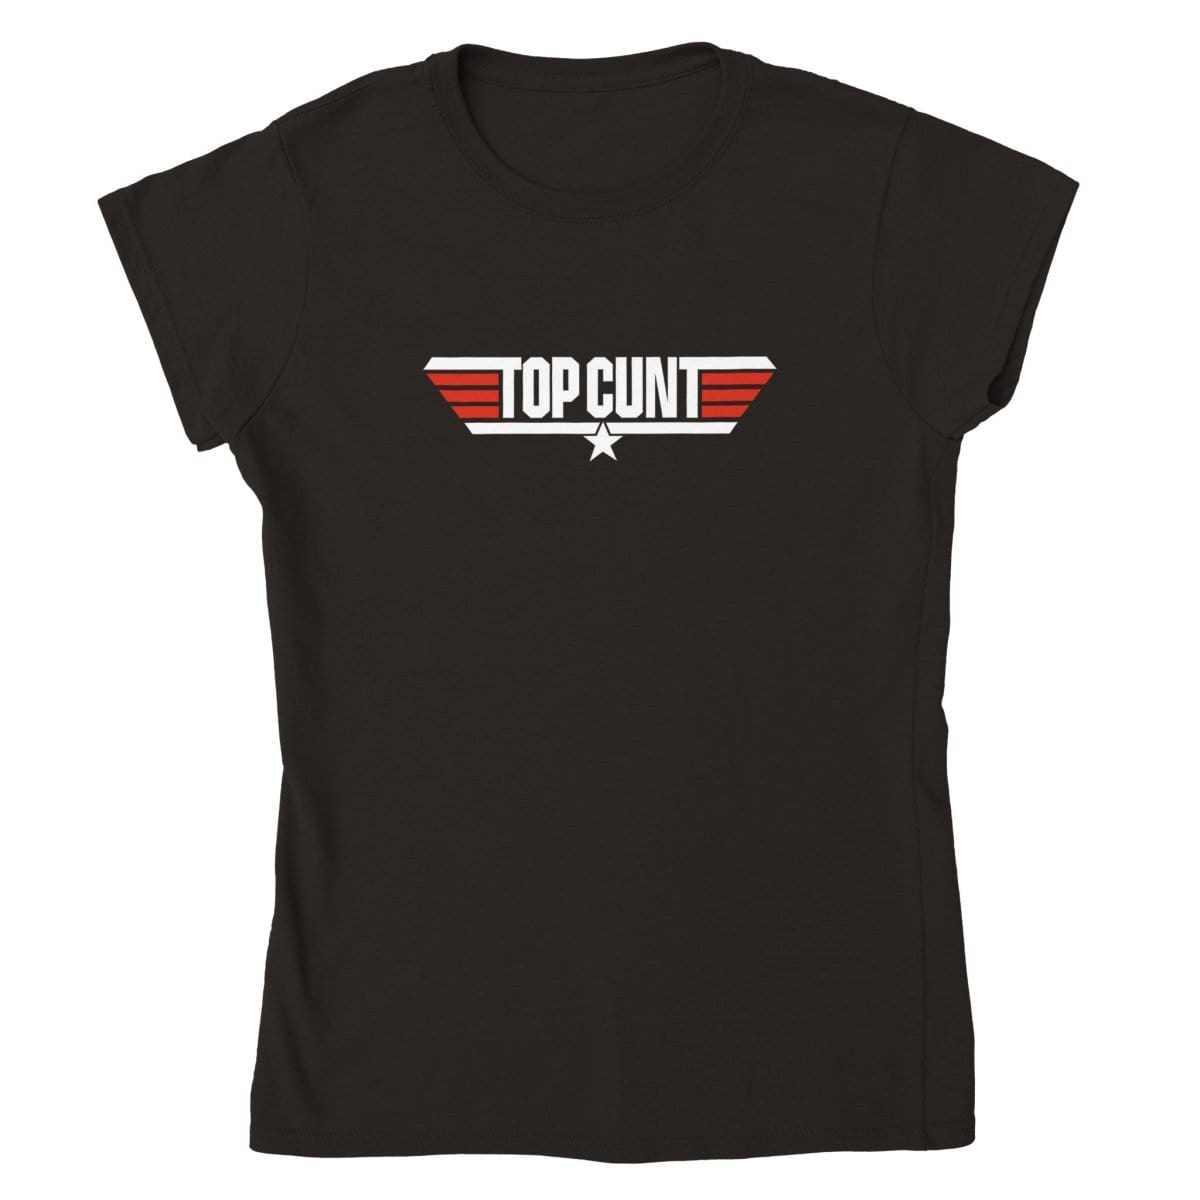 Top Cunt T-Shirt Australia Online Color Black / Womens / S